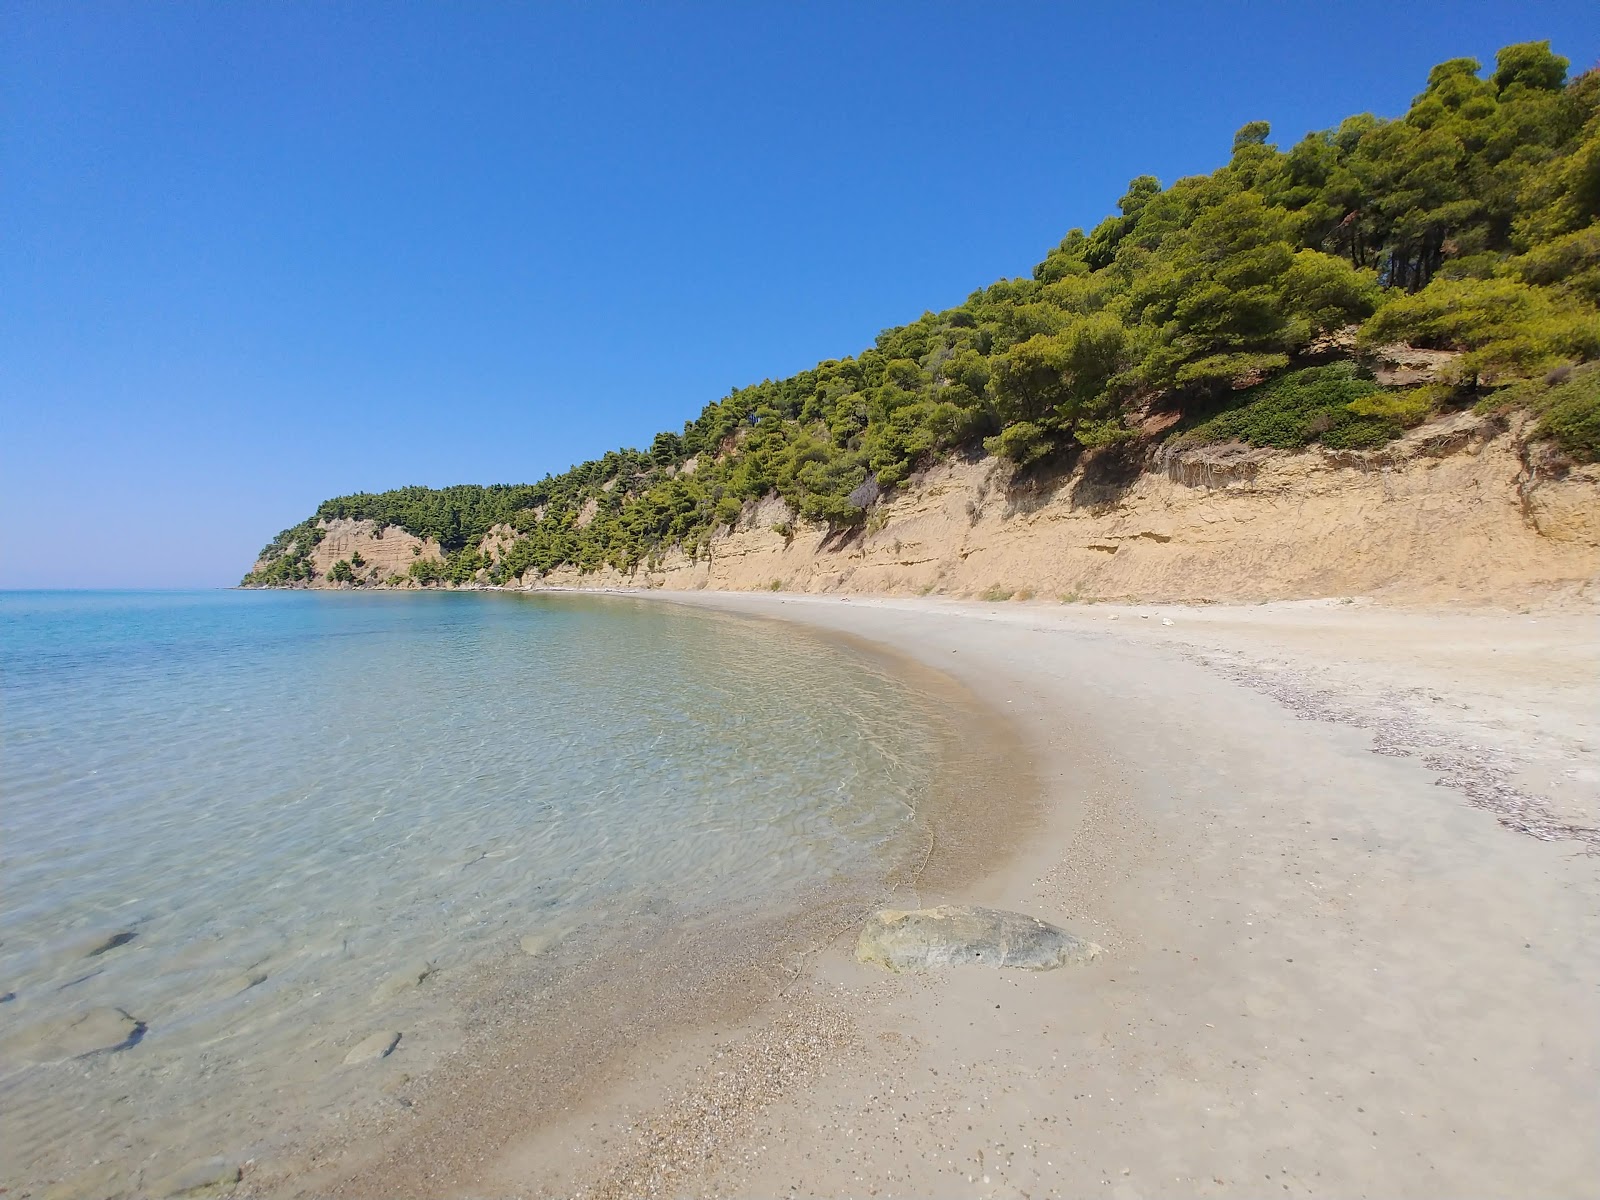 Fotografie cu Simantra beach - locul popular printre cunoscătorii de relaxare